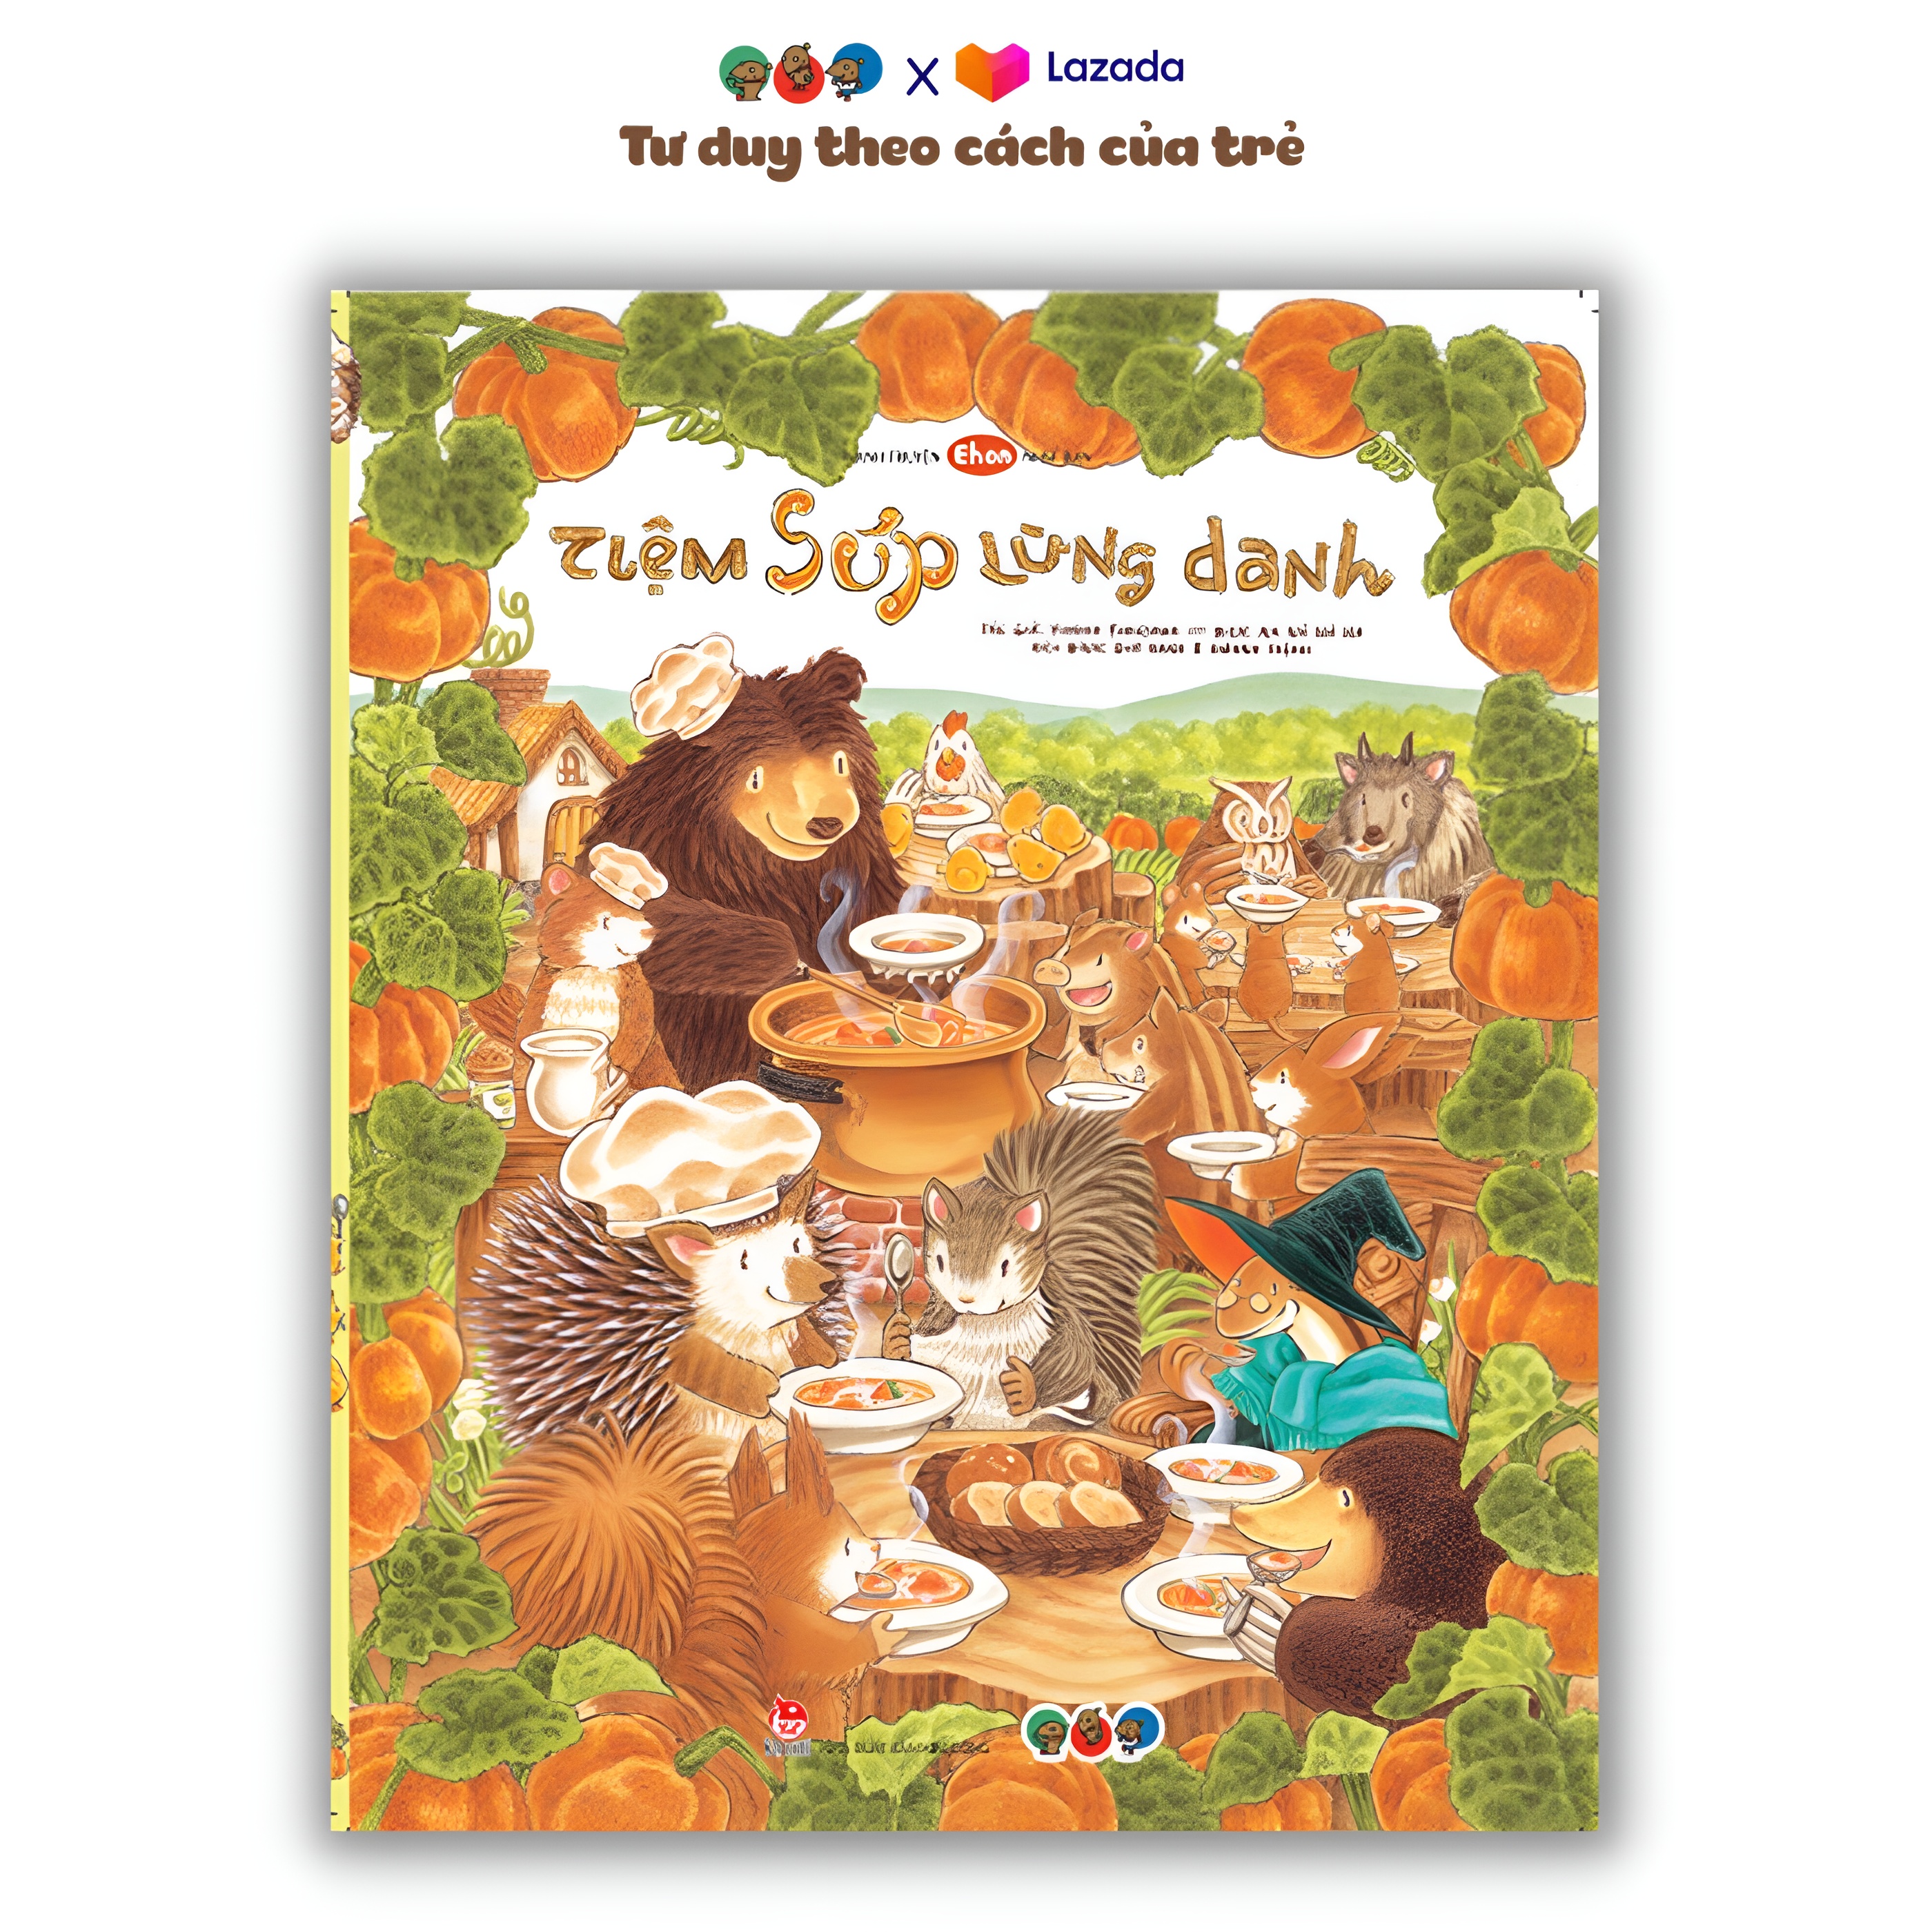 Sách Ehon Phát triển tư duy cho bé 3 6 tuổi - Tiệm súp lừng danh (Tranh truyện ehon Nhật Bản cho bé)